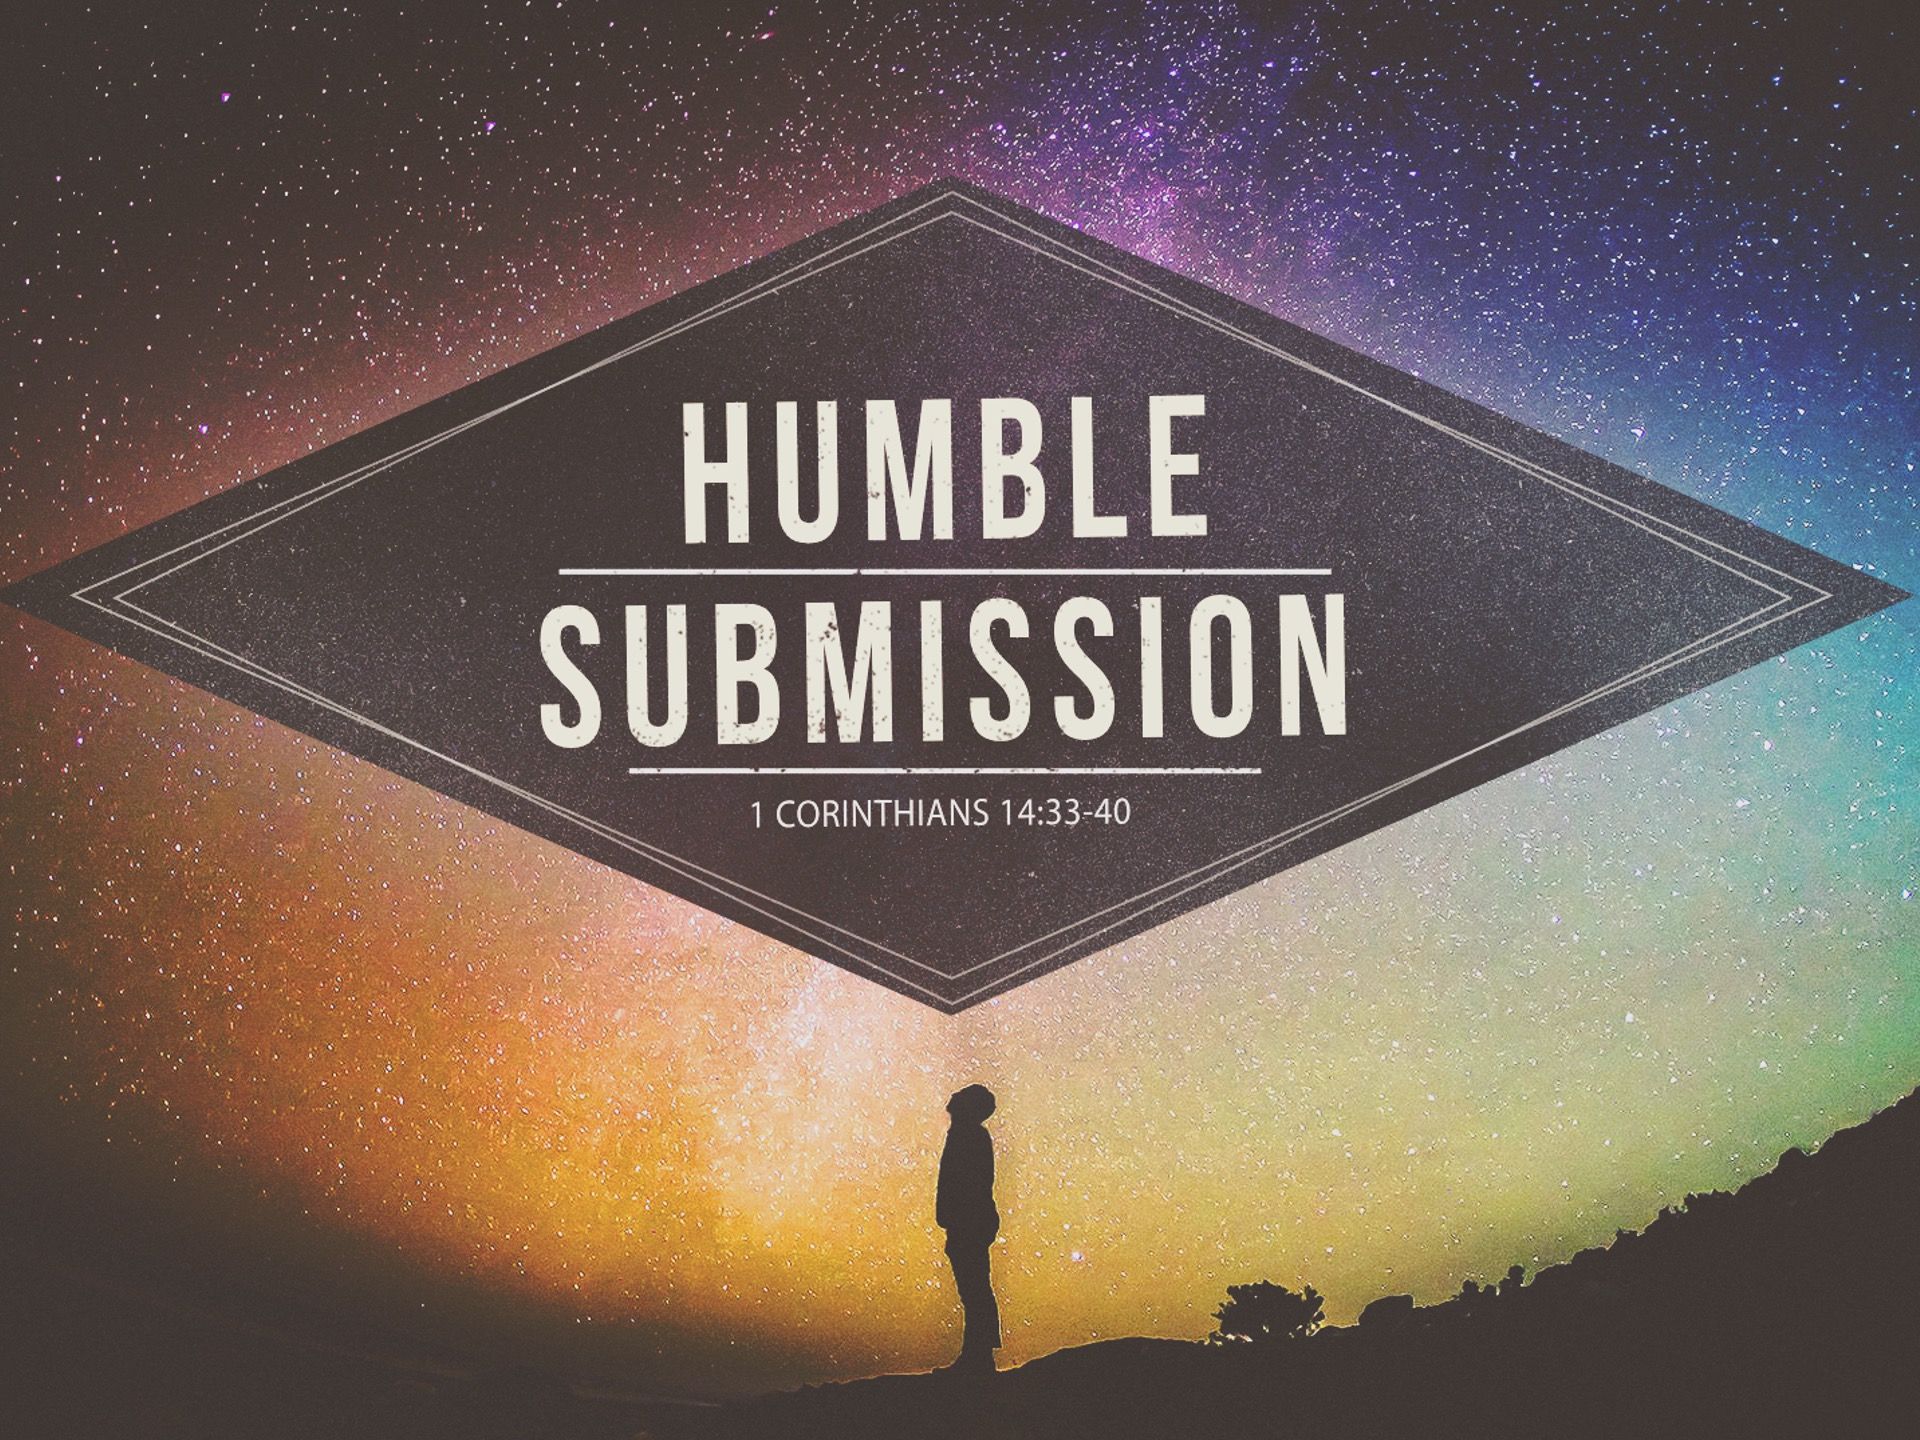 Humble Submission 1 Corinthians 14:33-40